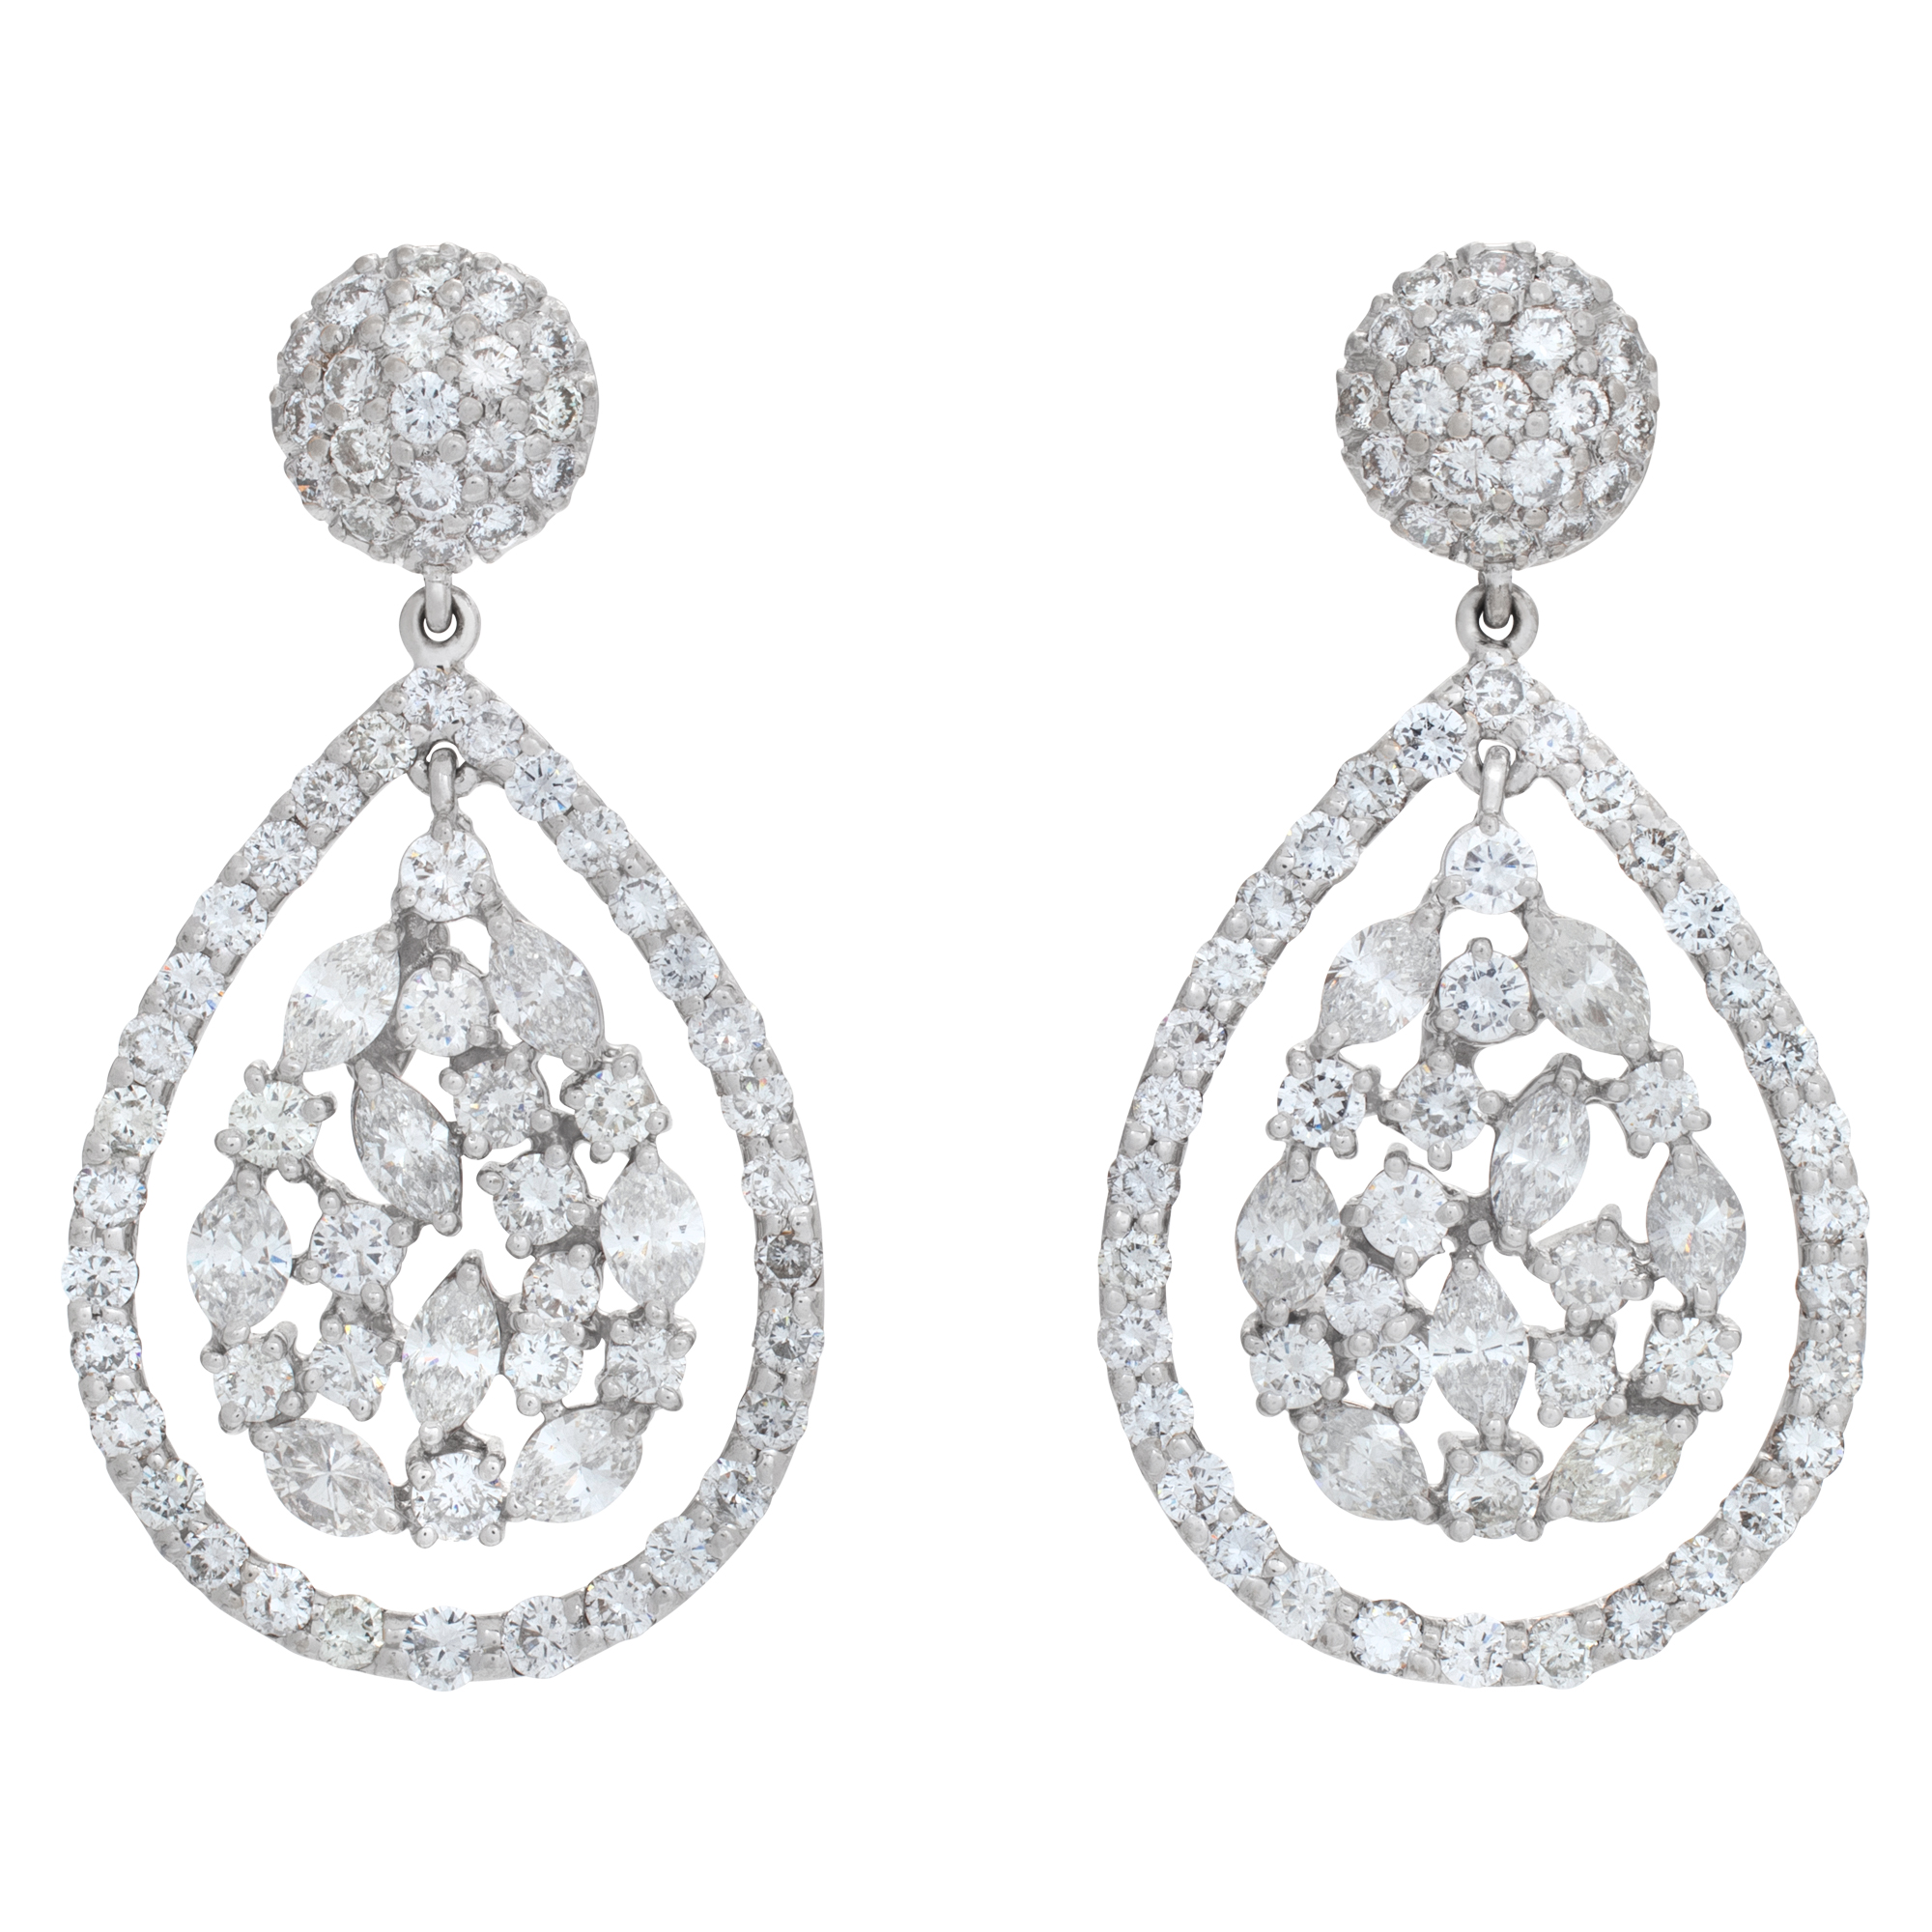 Tear drop dangle diamond earrings set in 18k white gold image 1